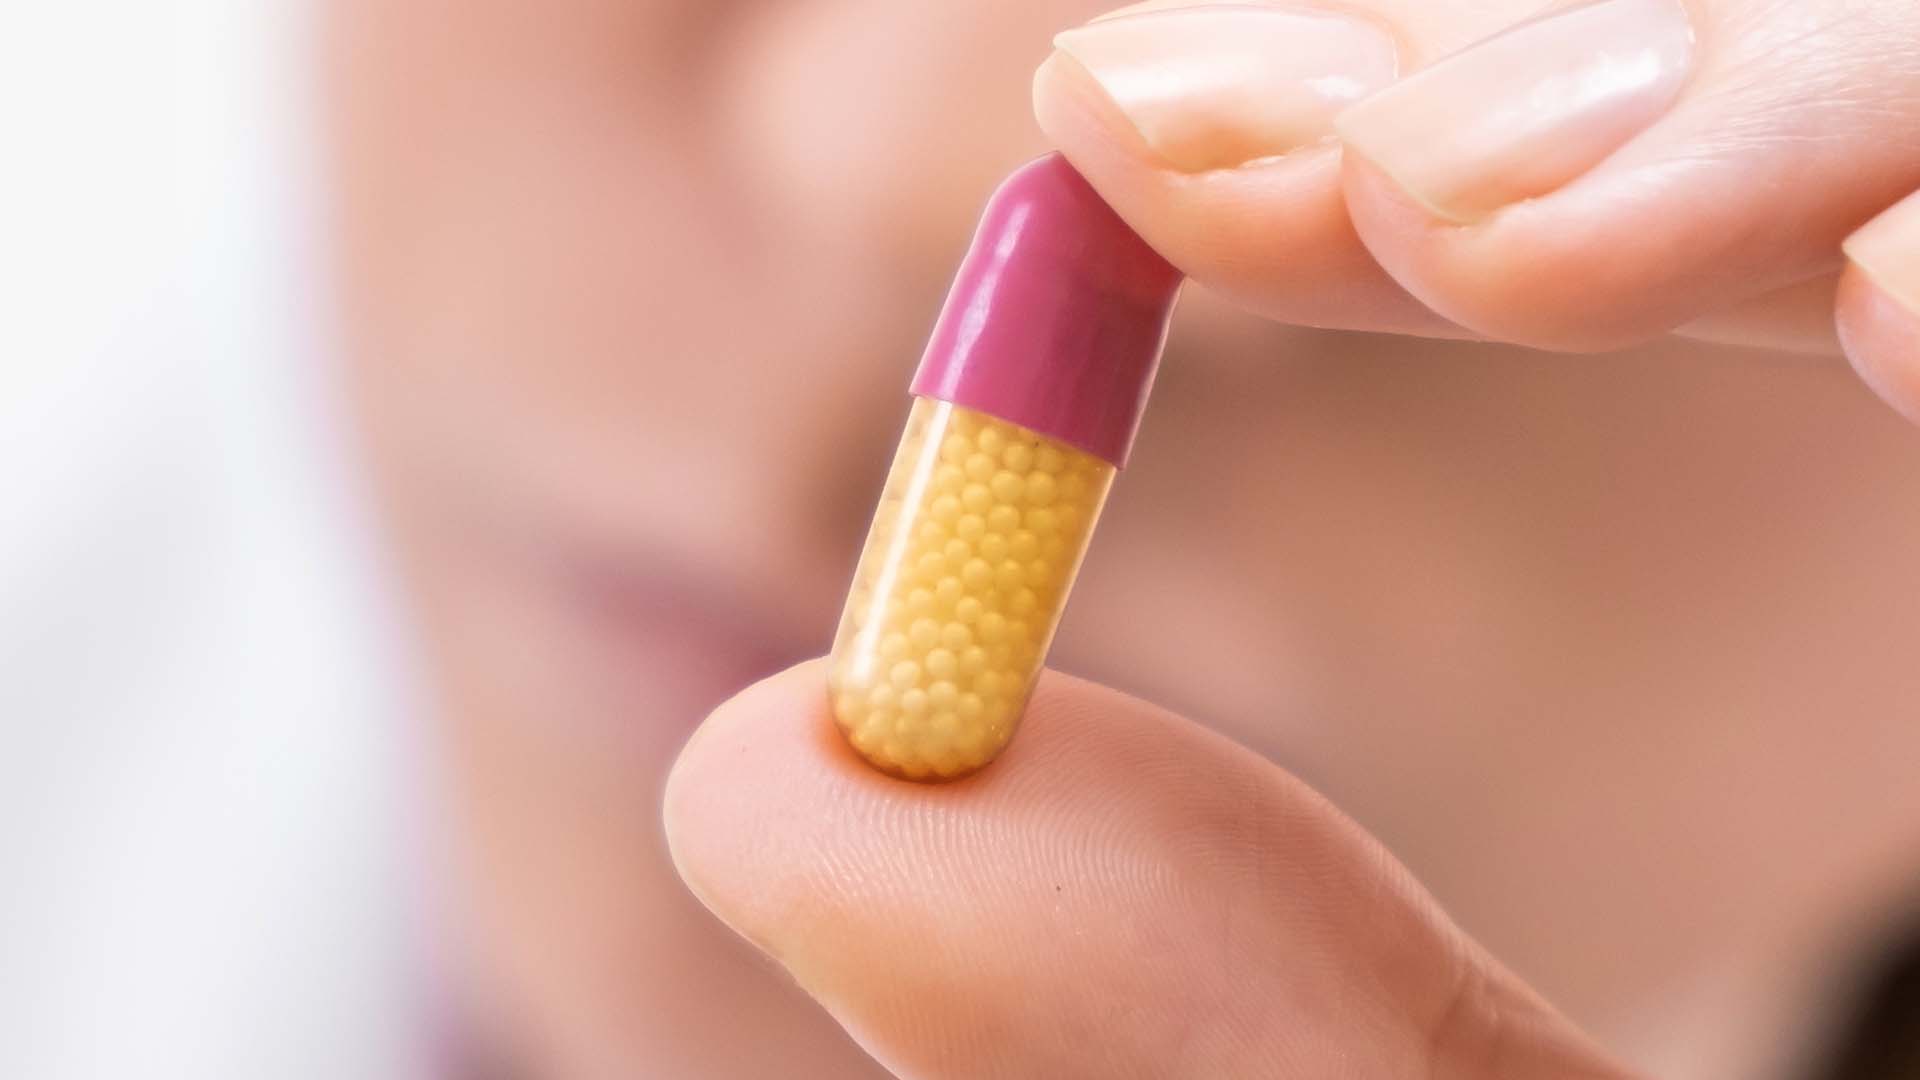 la super gonorrhée resiste aux antibiotiques habituellement prescrits